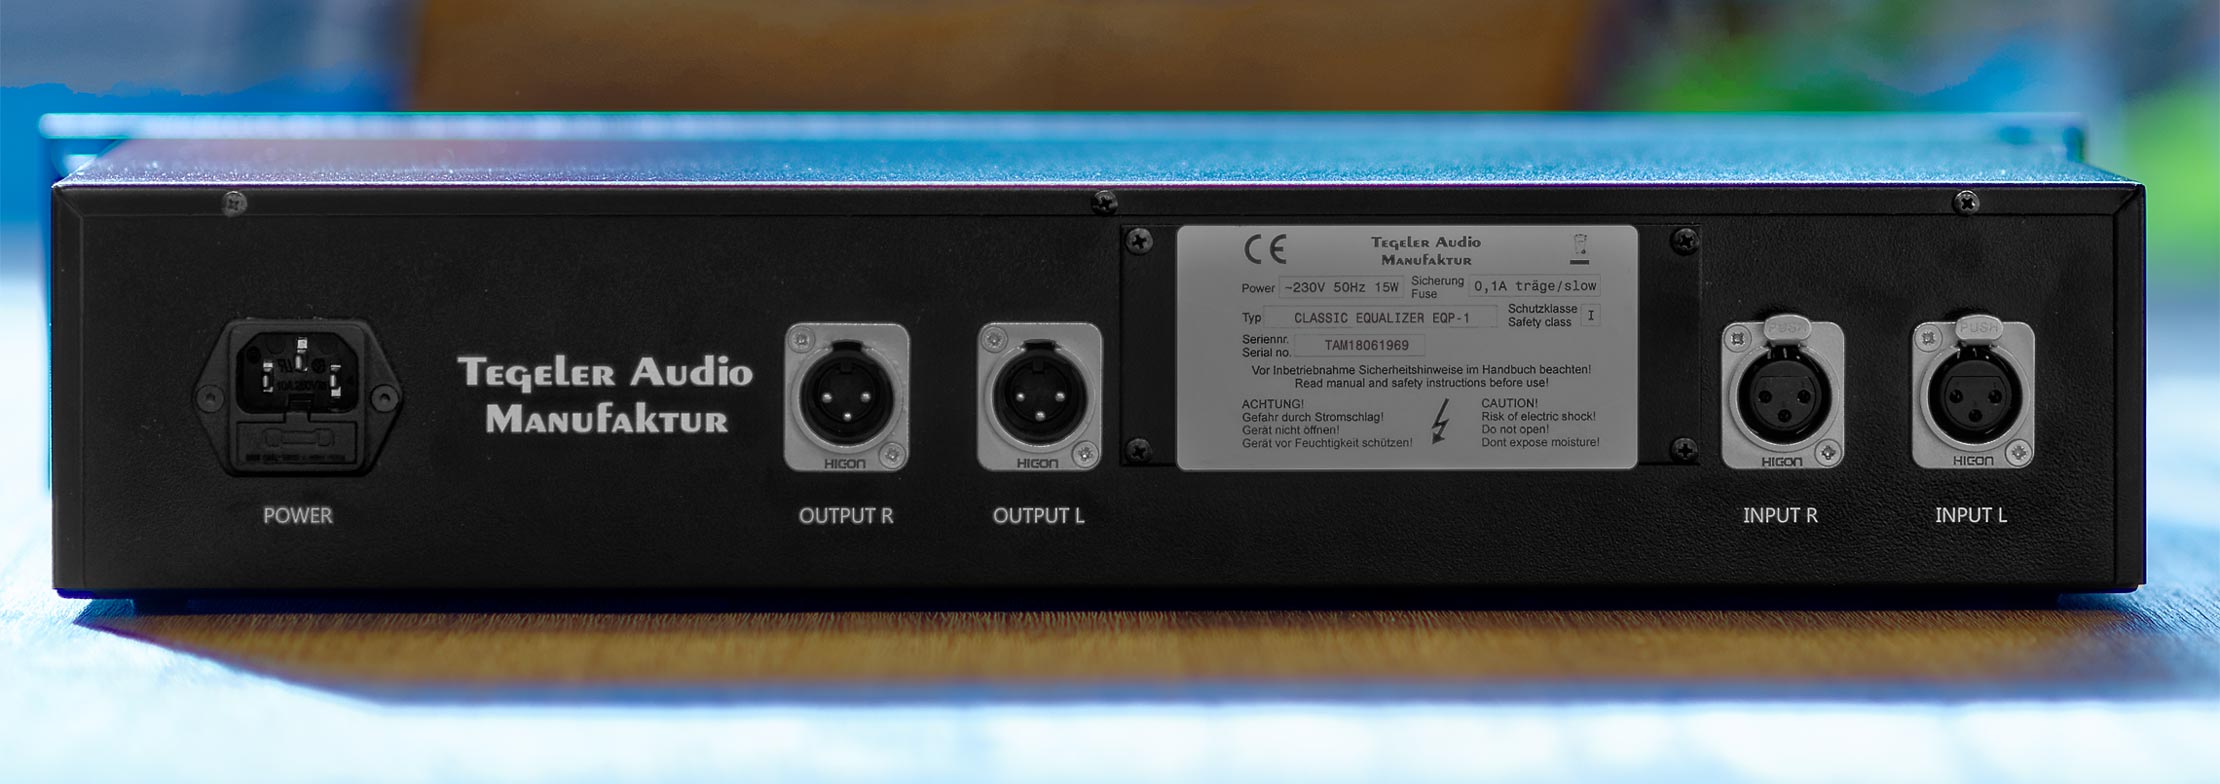 Tegeler Audio Manufaktur Eqp-1 - Equaliseur / Channel Strip - Variation 1